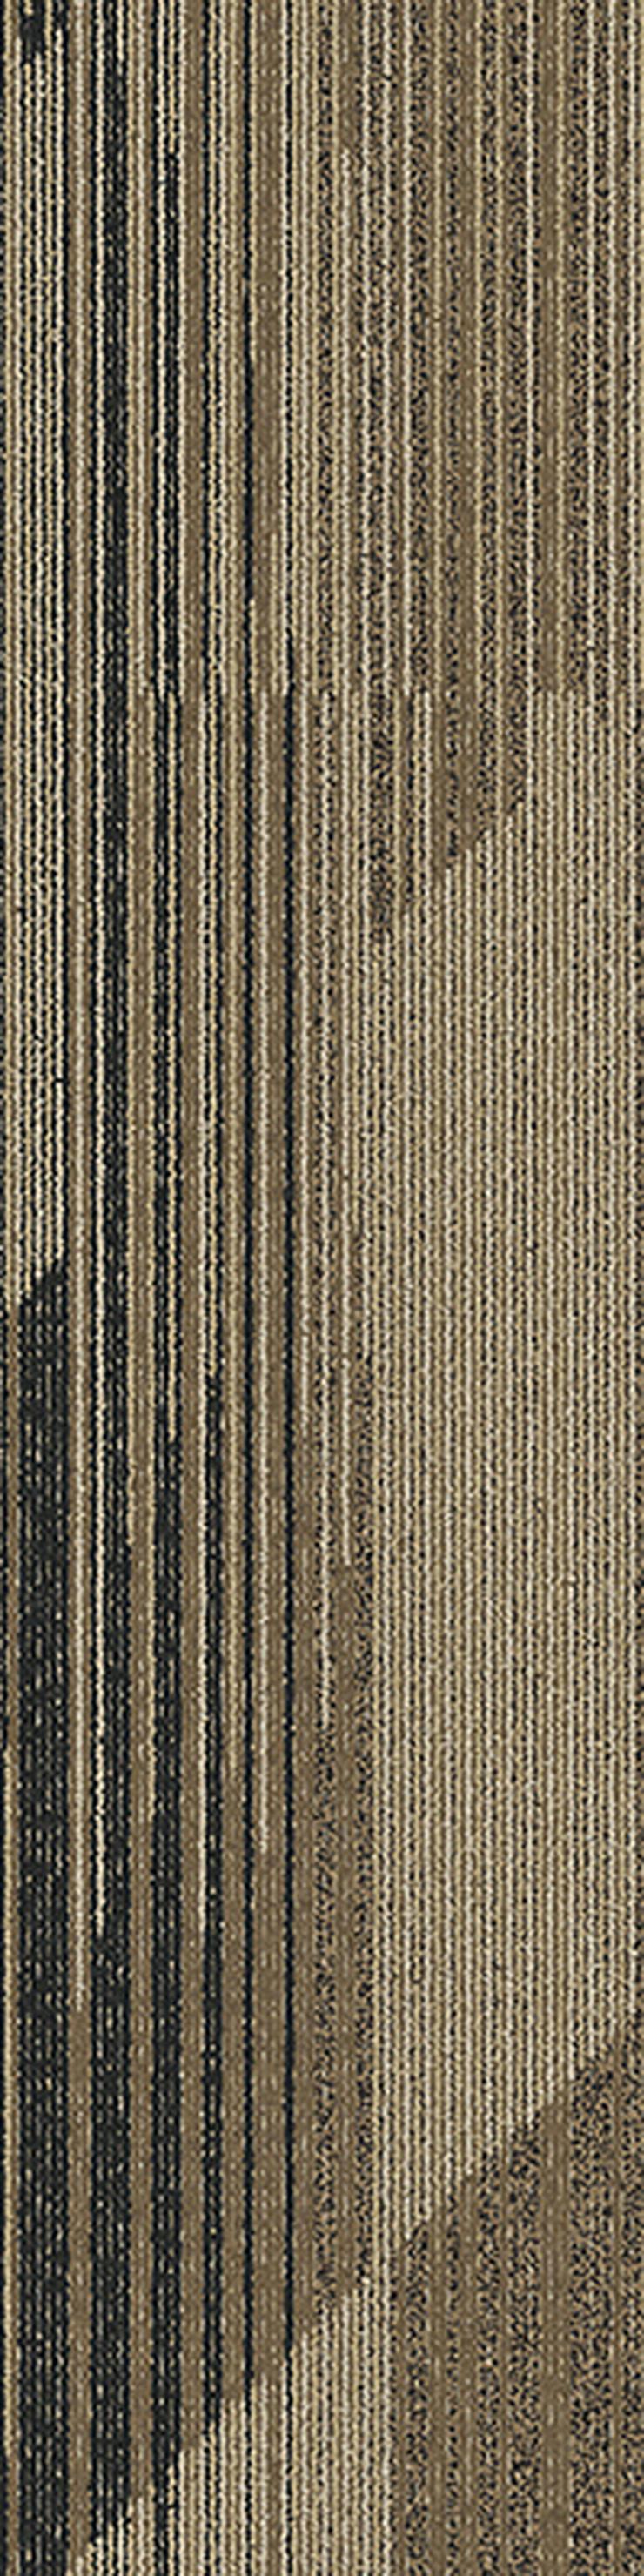 Gestreifte 'Laminat' Teppichfliesen. Bodenbelag in Grau und Braun - Teppiche - Bild 8